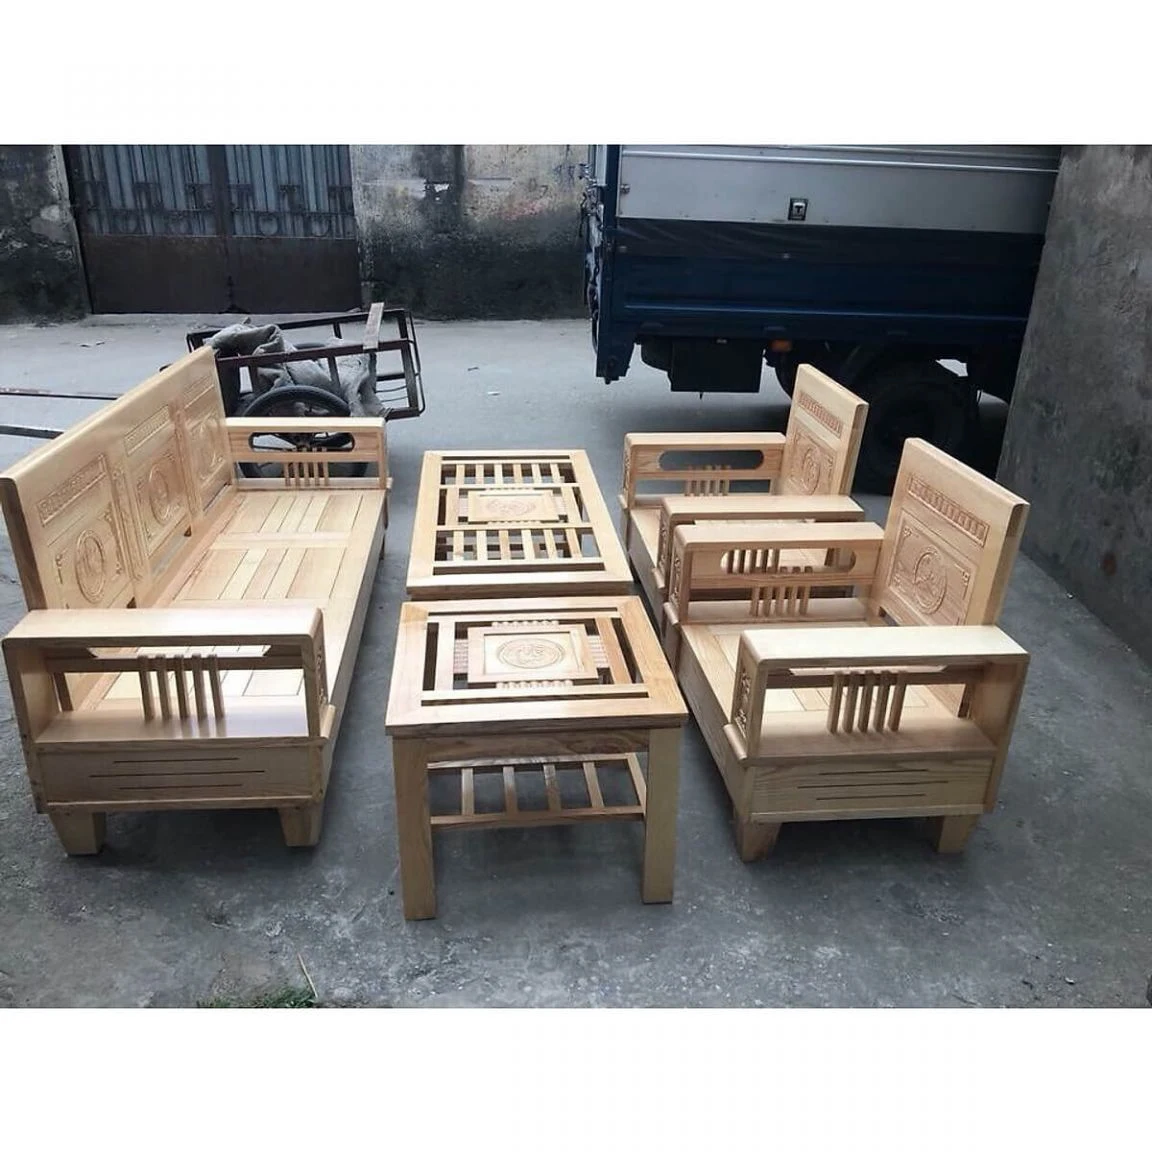 Những bộ bàn ghế gỗ ở mức giá rẻ như này, gỗ đưa vào gia công chưa được xử lý kỹ càng, nhanh hỏng